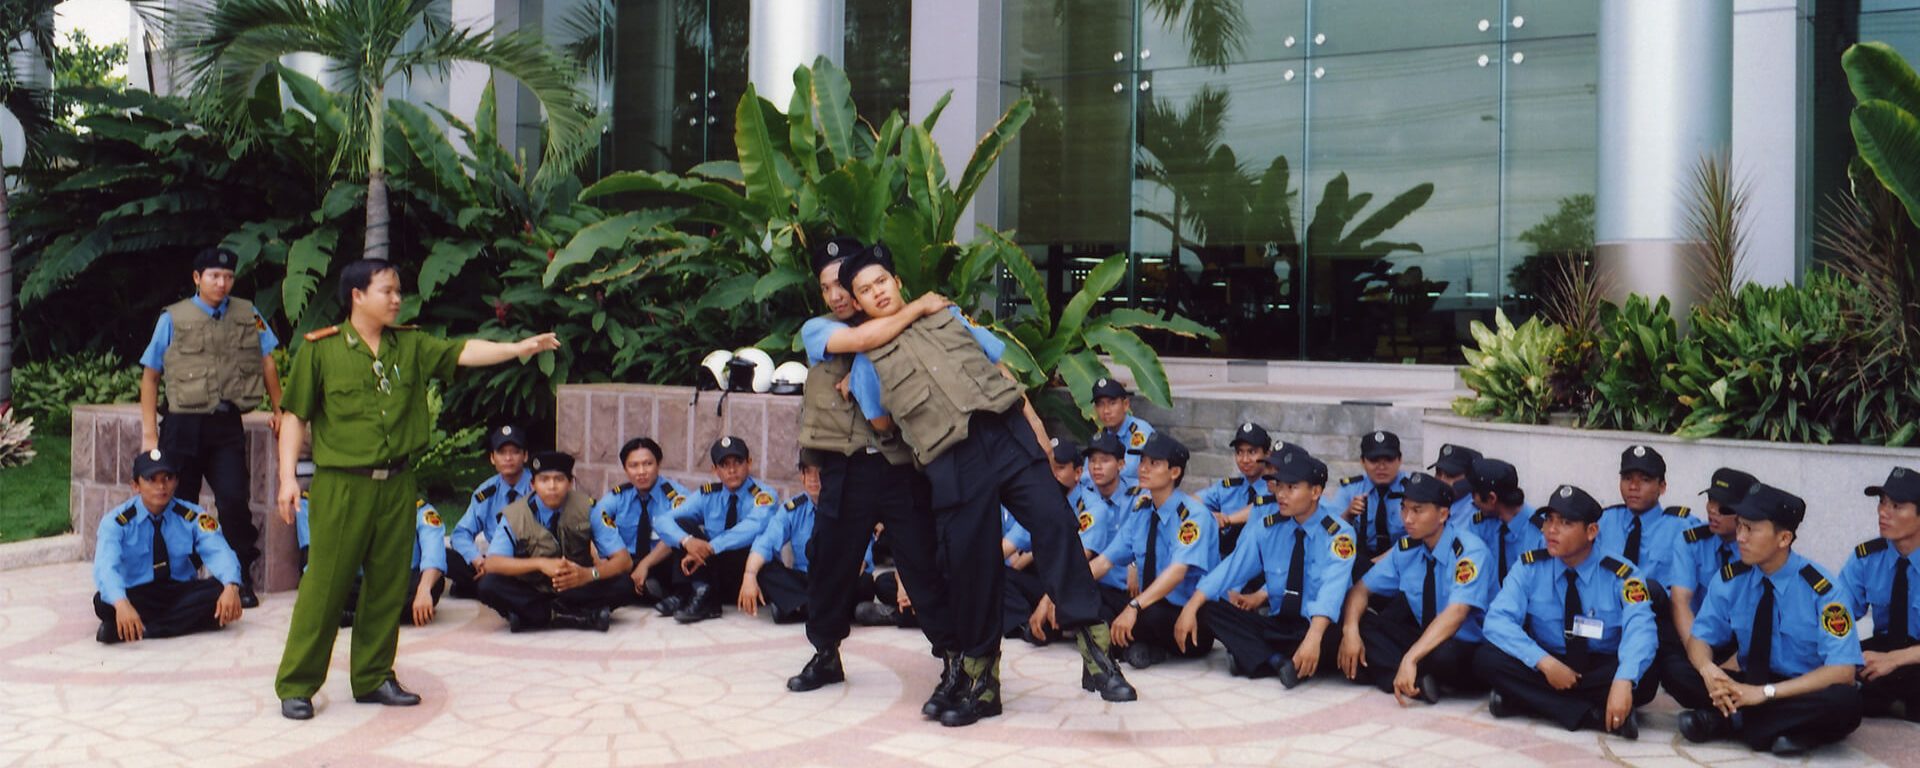 Dịch vụ bảo vệ - Công ty bảo vệ chuyên nghiệp Đất Việt tại TPHCM